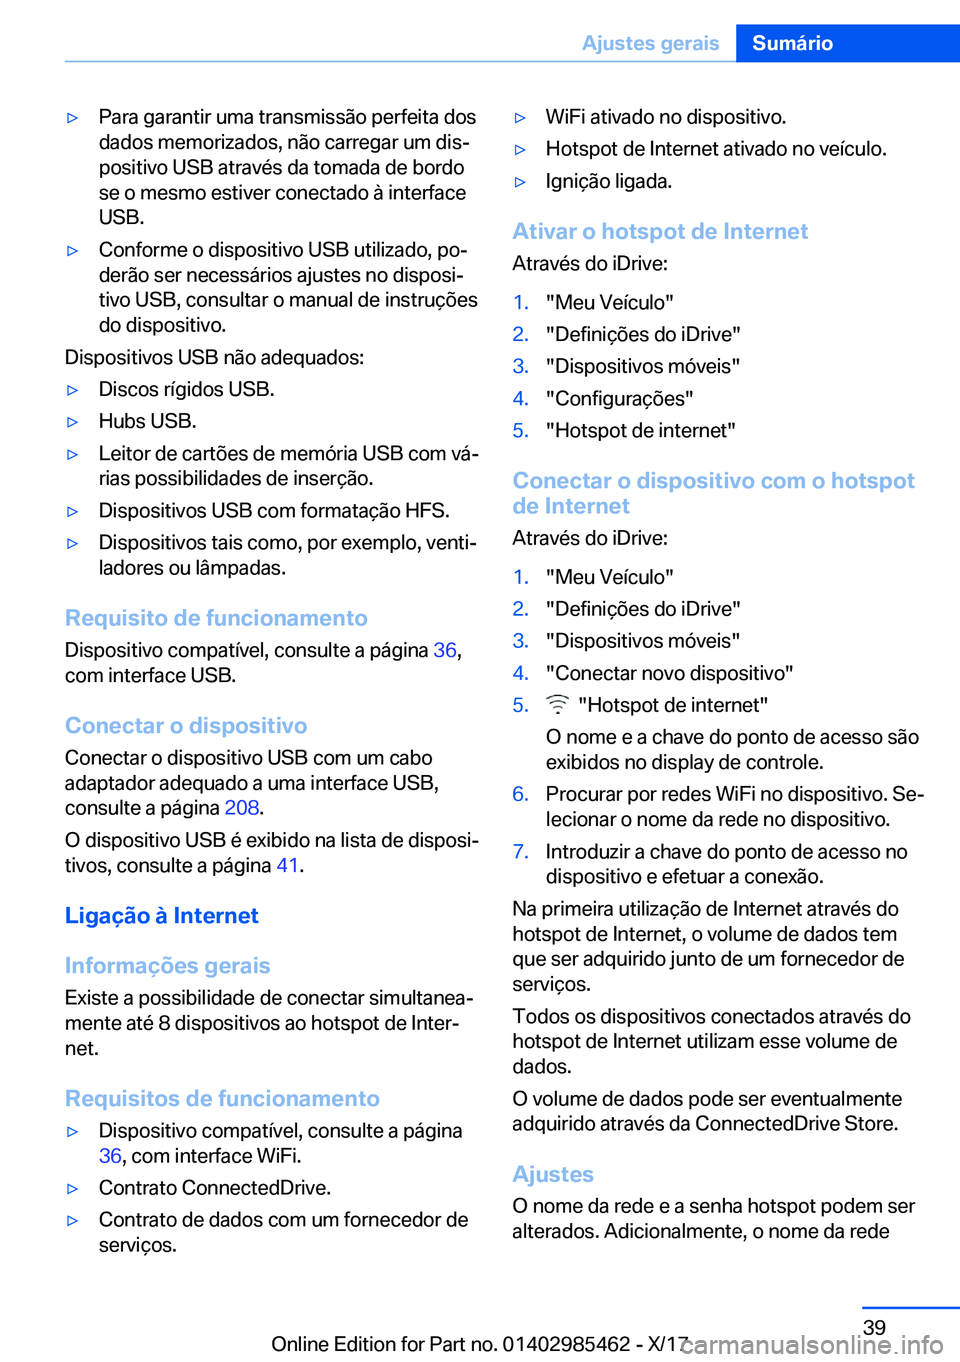 BMW X1 2018  Manual do condutor (in Portuguese) y�P�a�r�a� �g�a�r�a�n�t�i�r� �u�m�a� �t�r�a�n�s�m�i�s�s�ã�o� �p�e�r�f�e�i�t�a� �d�o�s�d�a�d�o�s� �m�e�m�o�r�i�z�a�d�o�s�,� �n�ã�o� �c�a�r�r�e�g�a�r� �u�m� �d�i�sª�p�o�s�i�t�i�v�o� �U�S�B� �a�t�r�